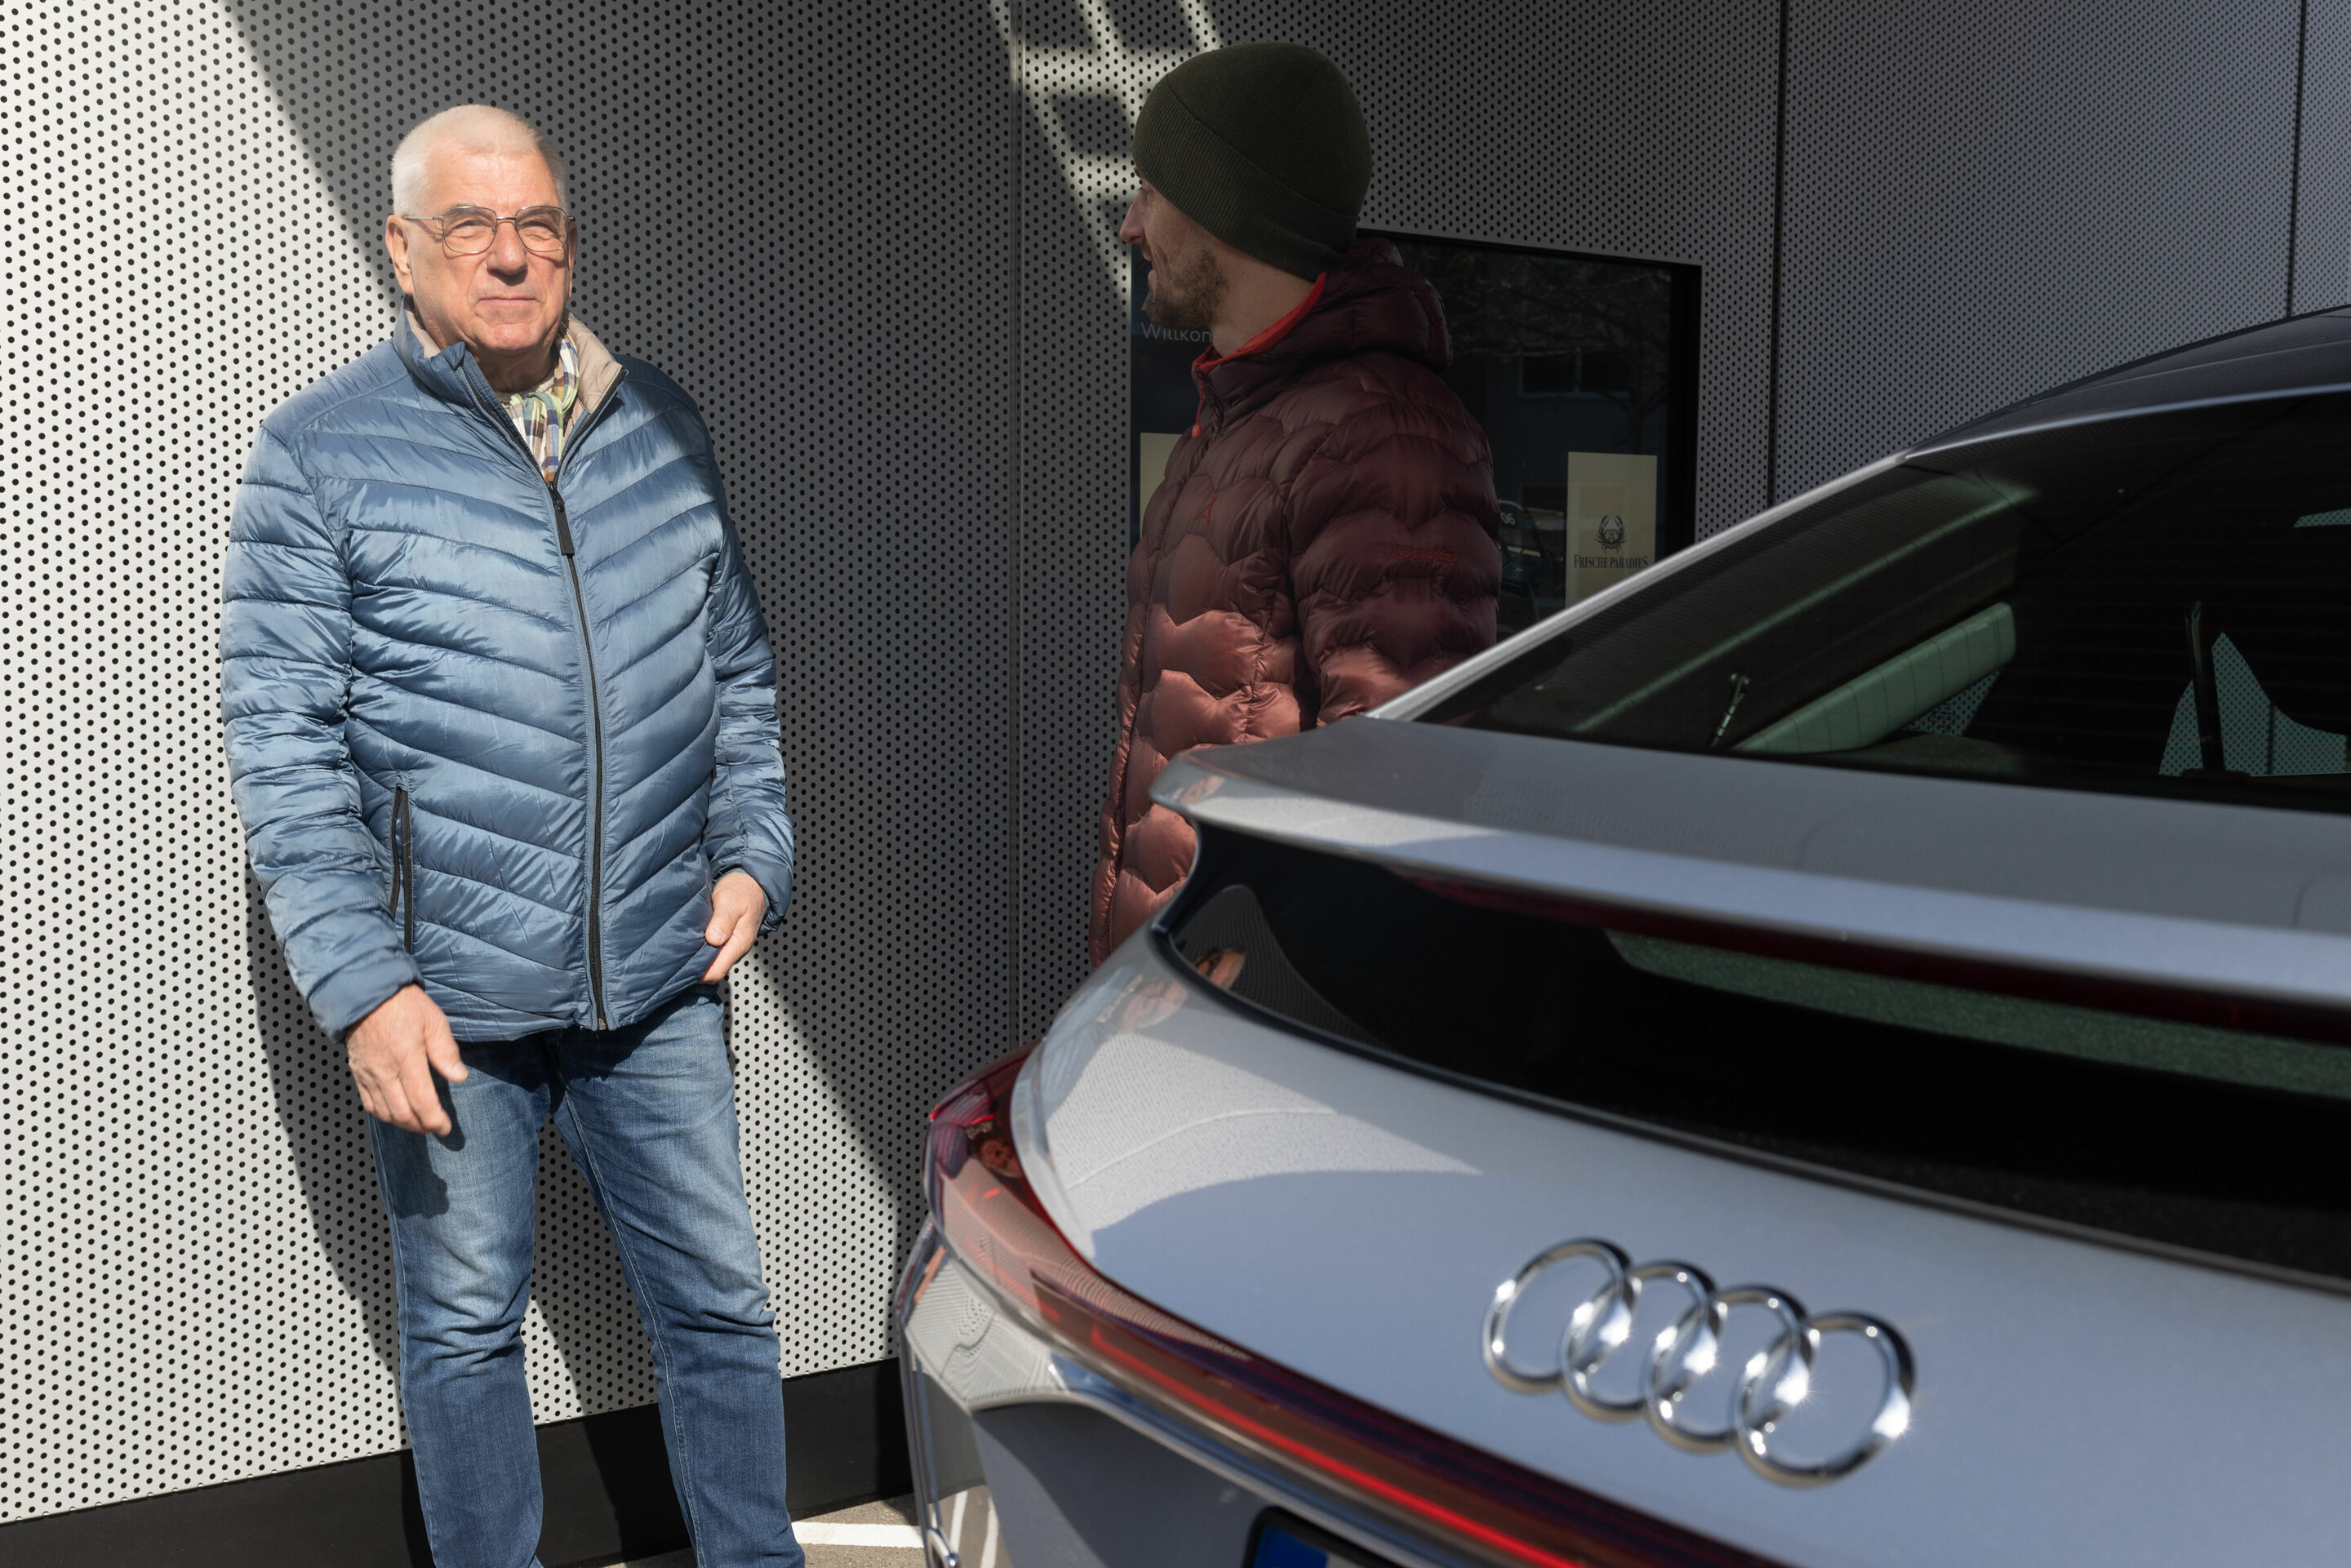 Audi charging hub Berlin